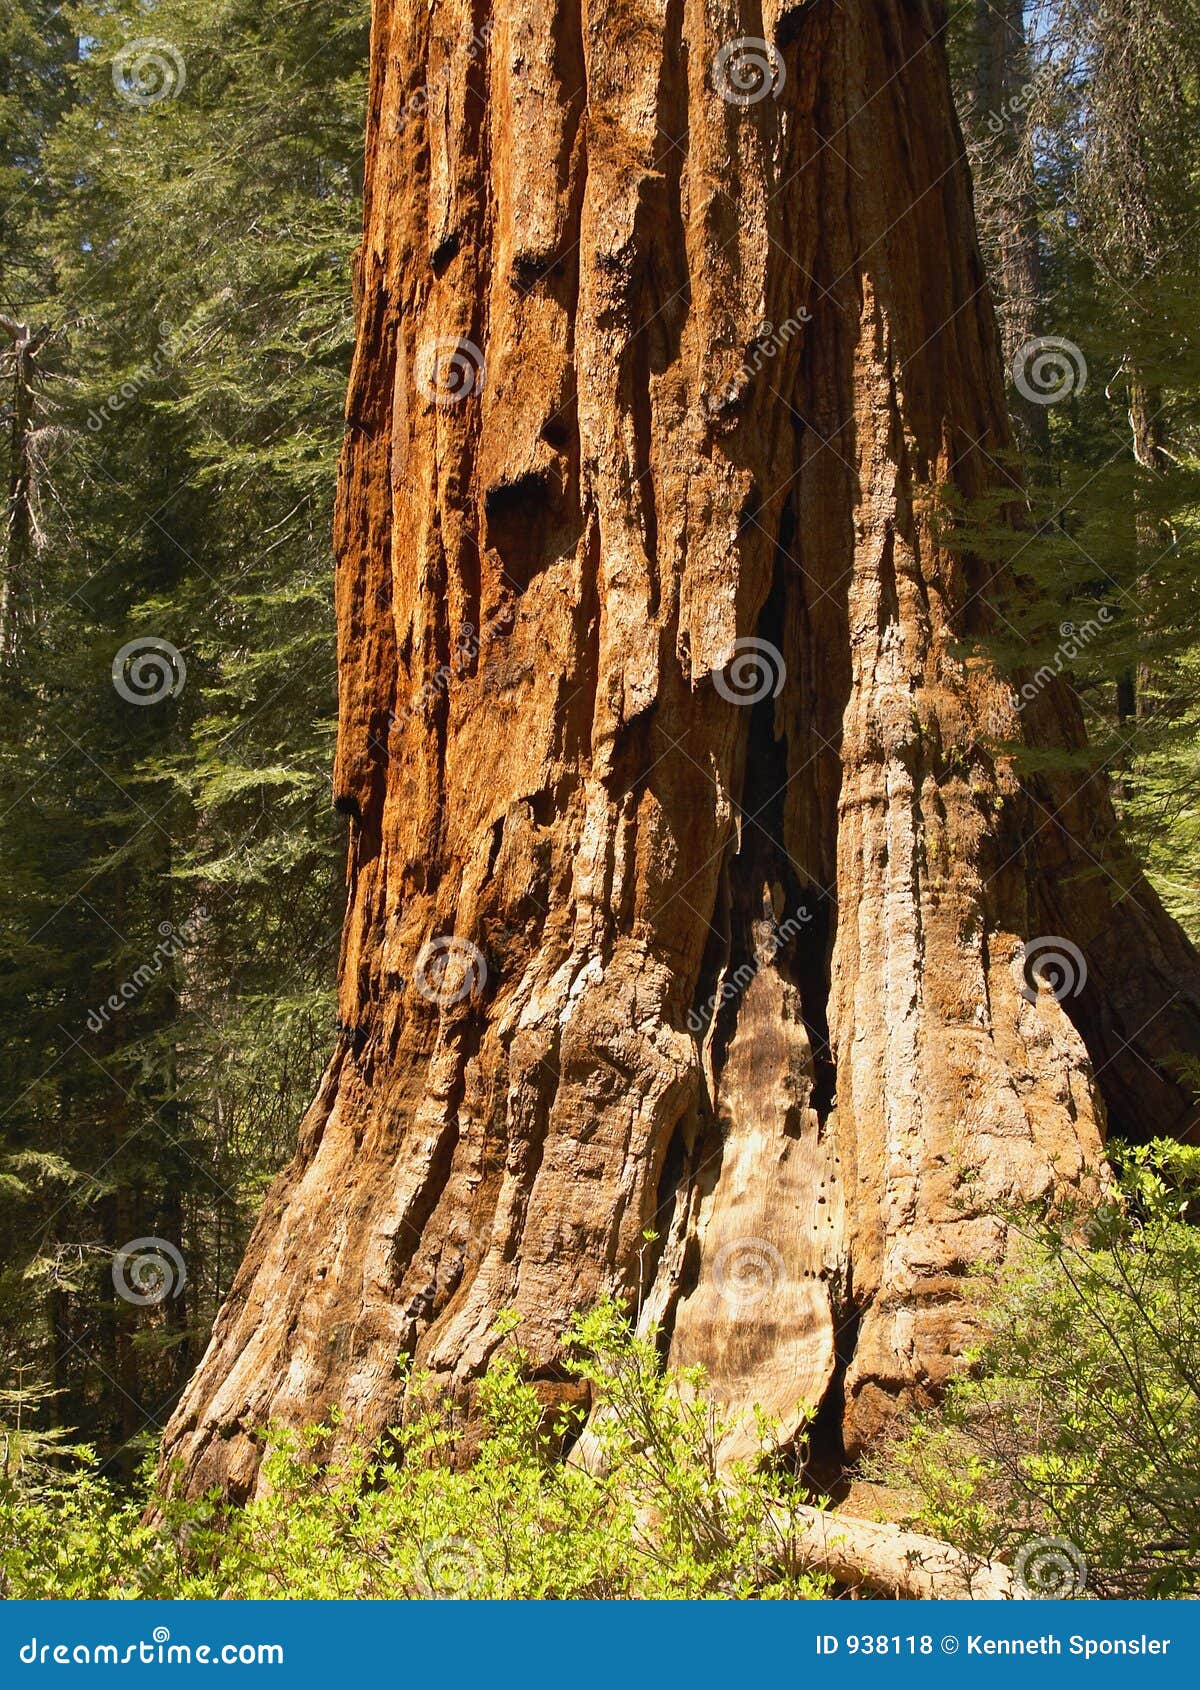 giant sequoia, trunk